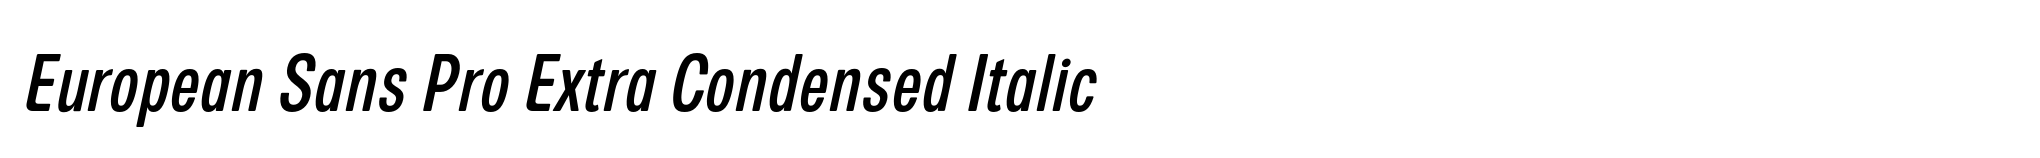 European Sans Pro Extra Condensed Italic image